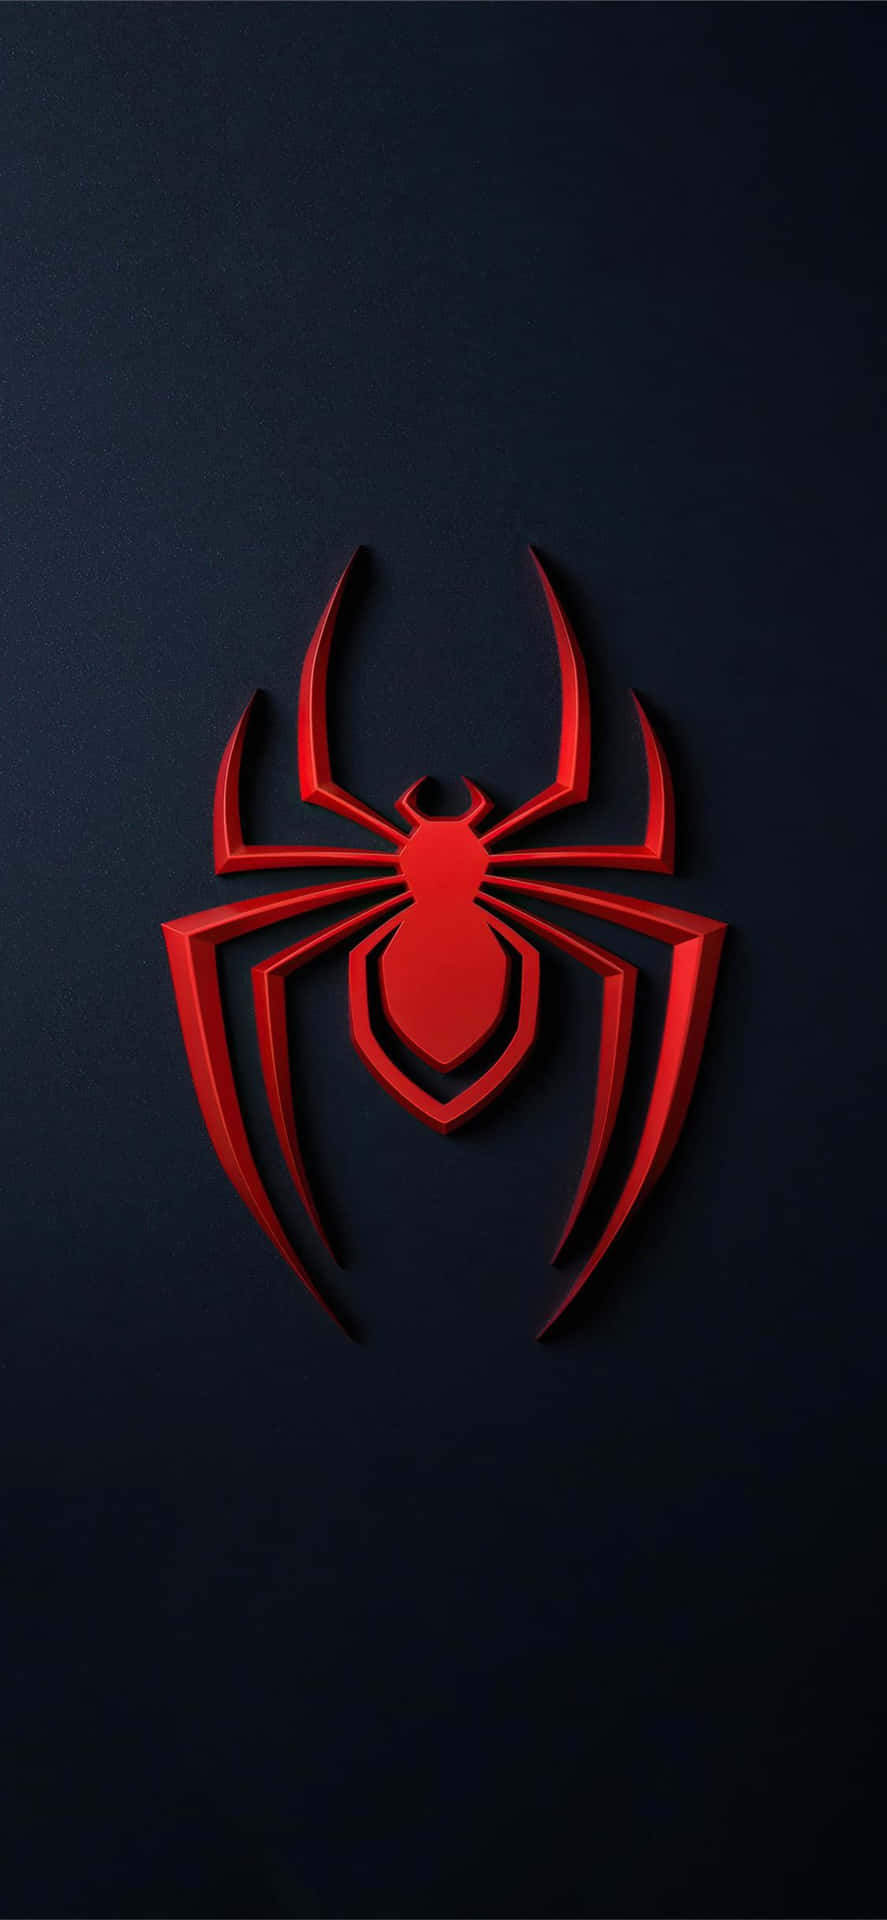 Logotipode Spider Man Ps4 En Color Rojo Sobre Un Fondo Oscuro. Fondo de pantalla